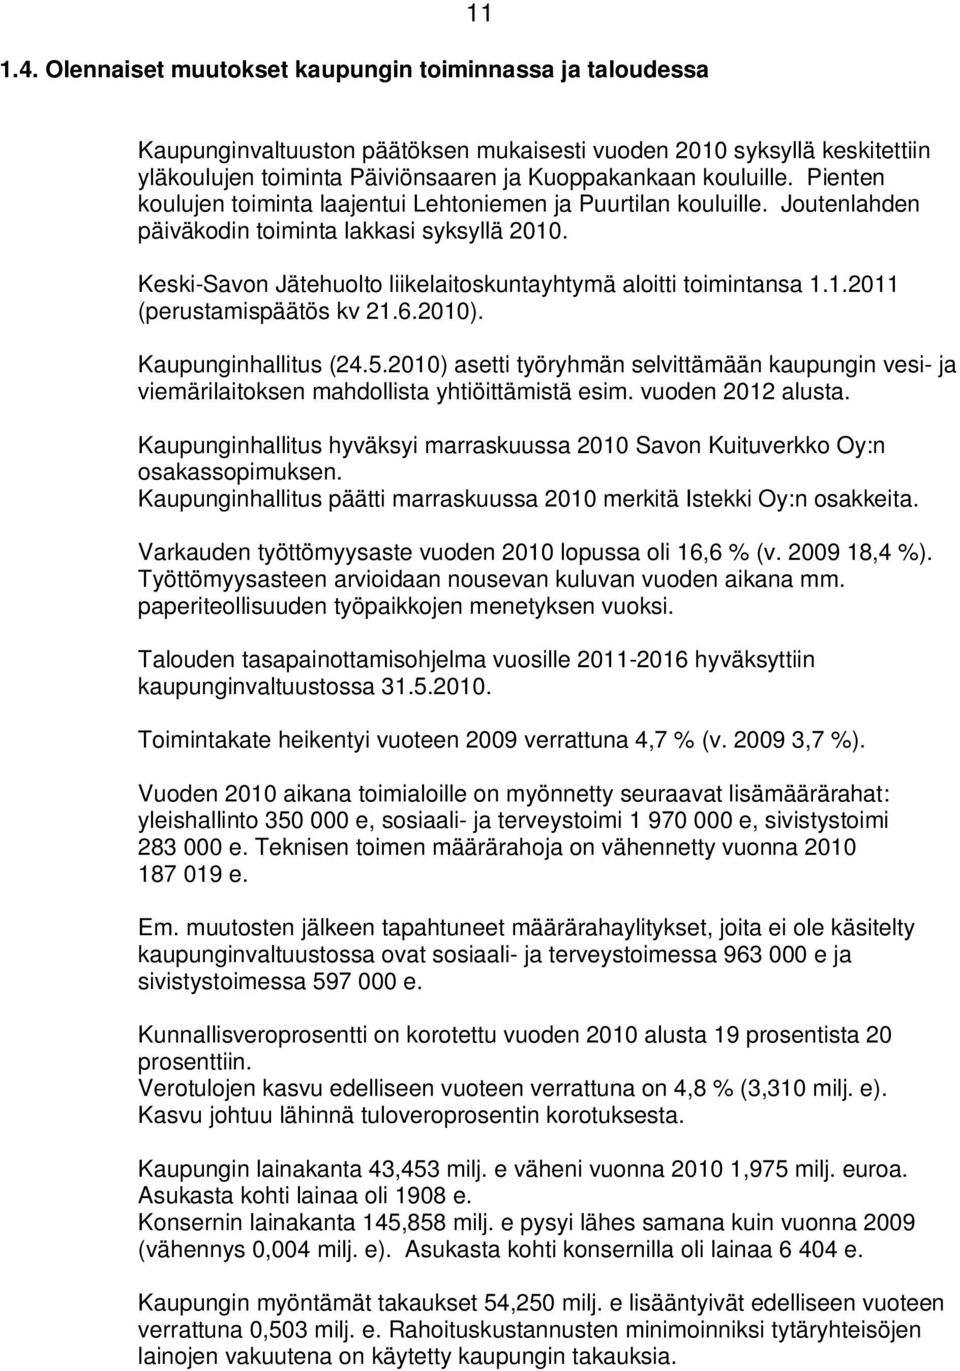 Pienten koulujen toiminta laajentui Lehtoniemen ja Puurtilan kouluille. Joutenlahden päiväkodin toiminta lakkasi syksyllä 2010. Keski-Savon Jätehuolto liikelaitoskuntayhtymä aloitti toimintansa 1.1.2011 (perustamispäätös kv 21.